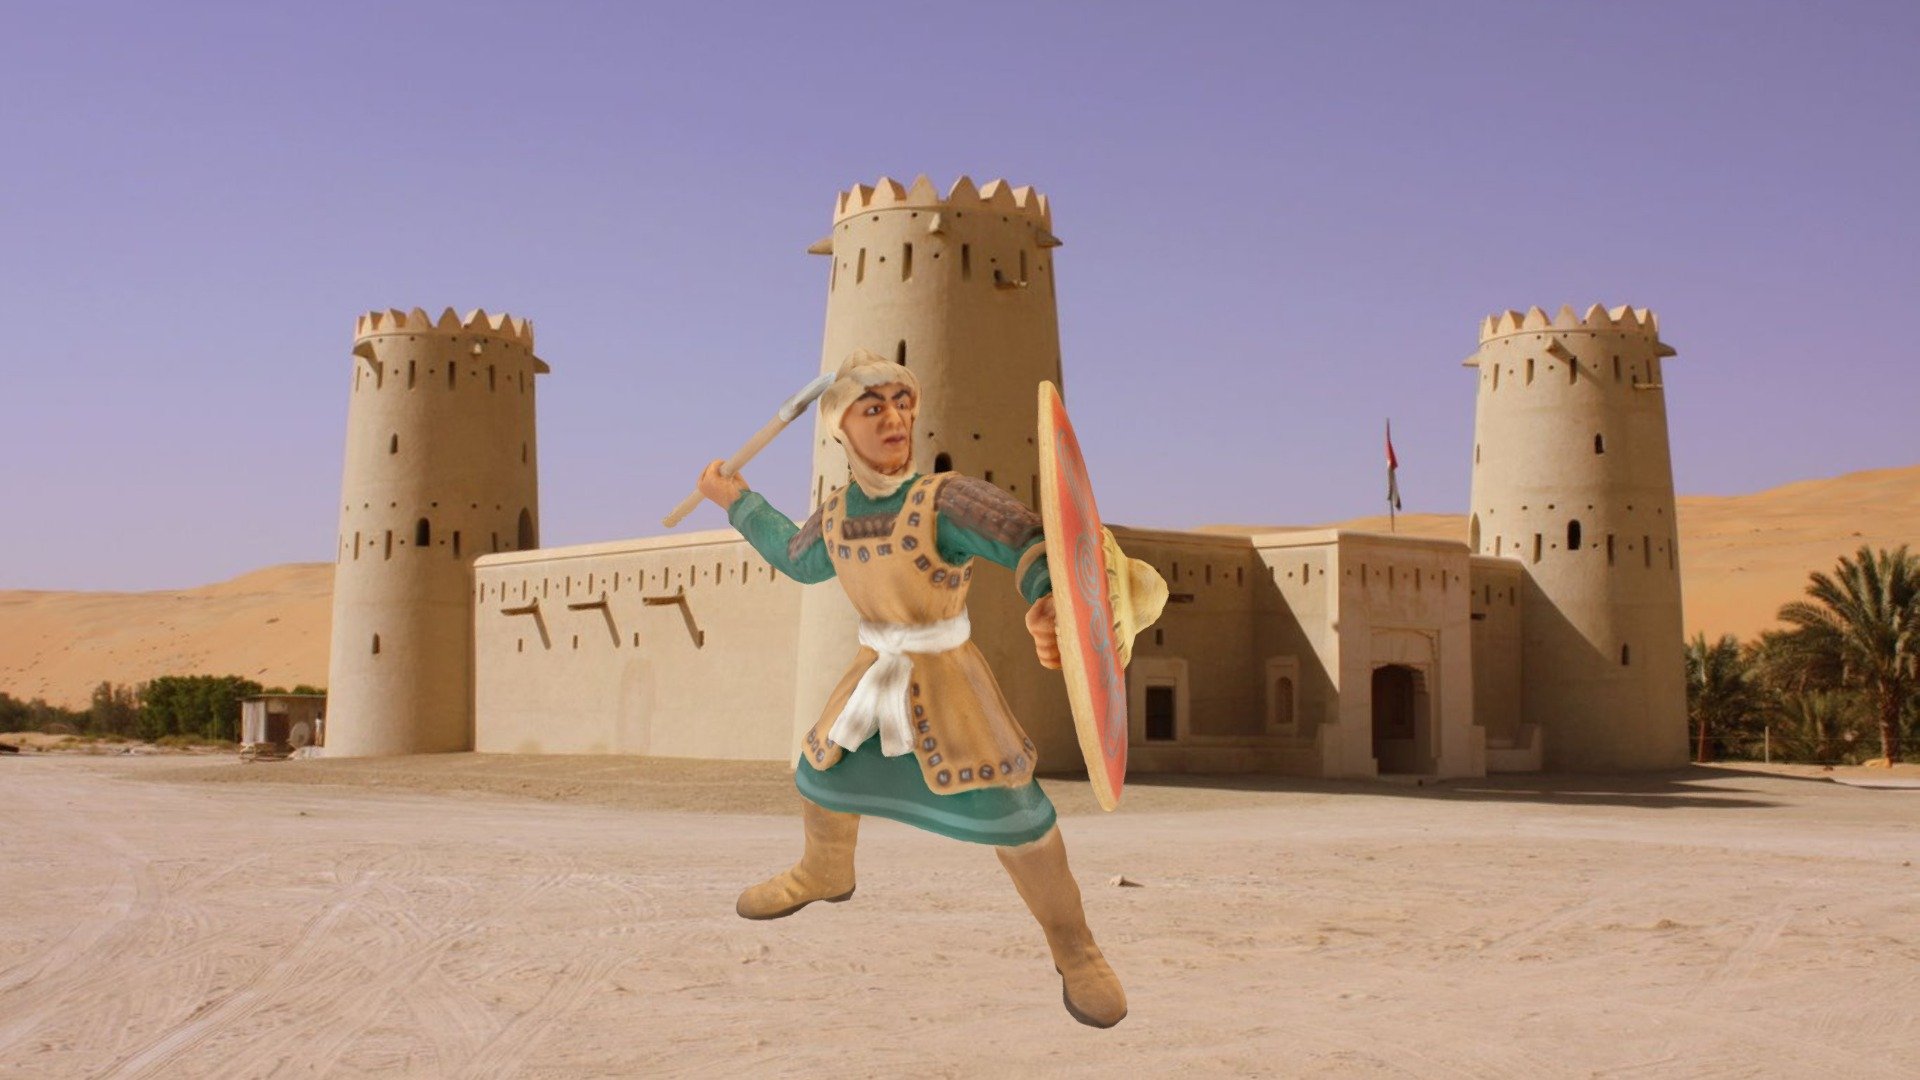 Lanciere, arabo, Arabic Foot soldier with spear